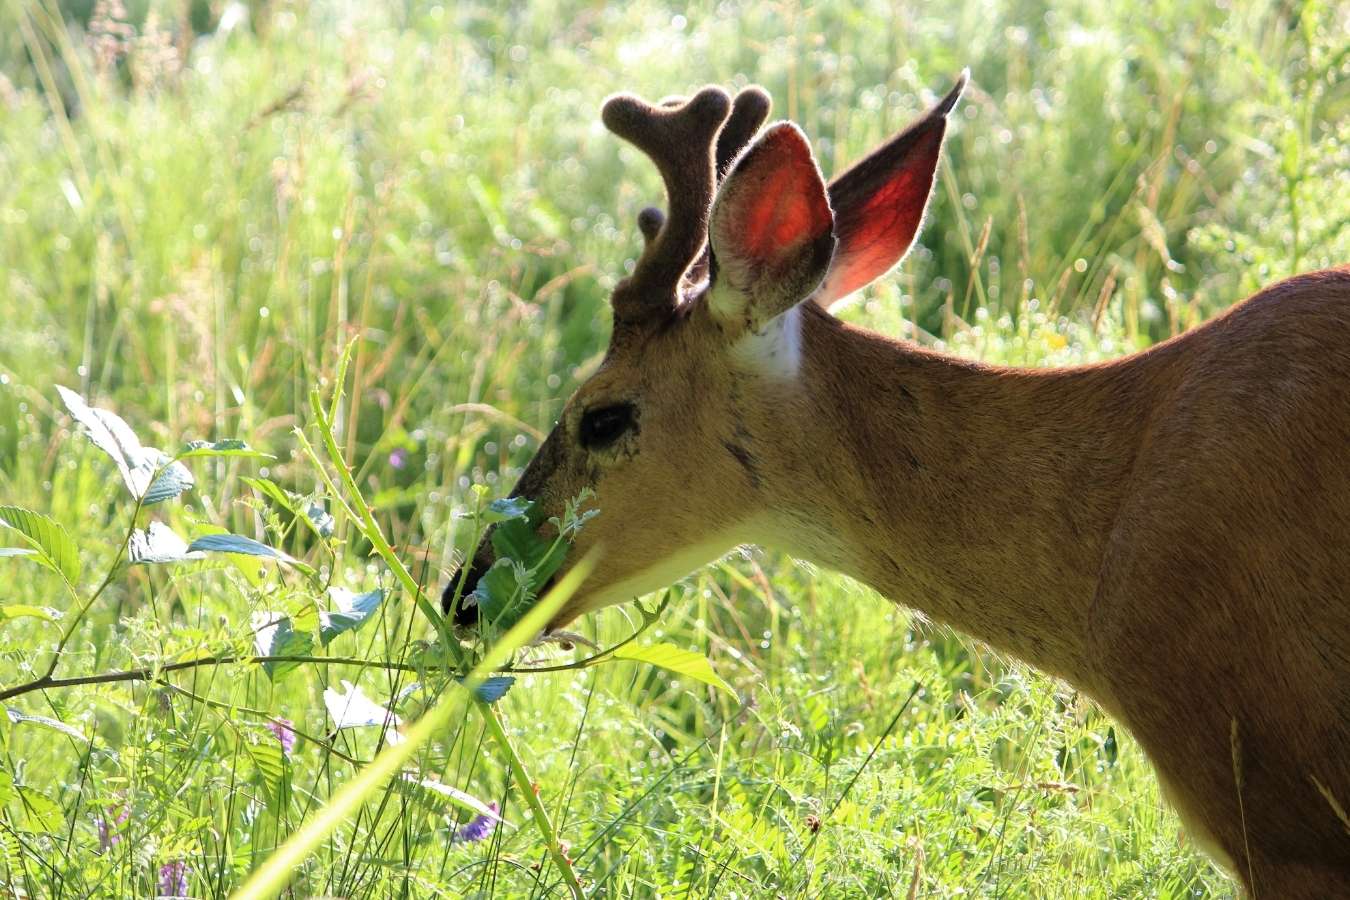 a deer eating leaves